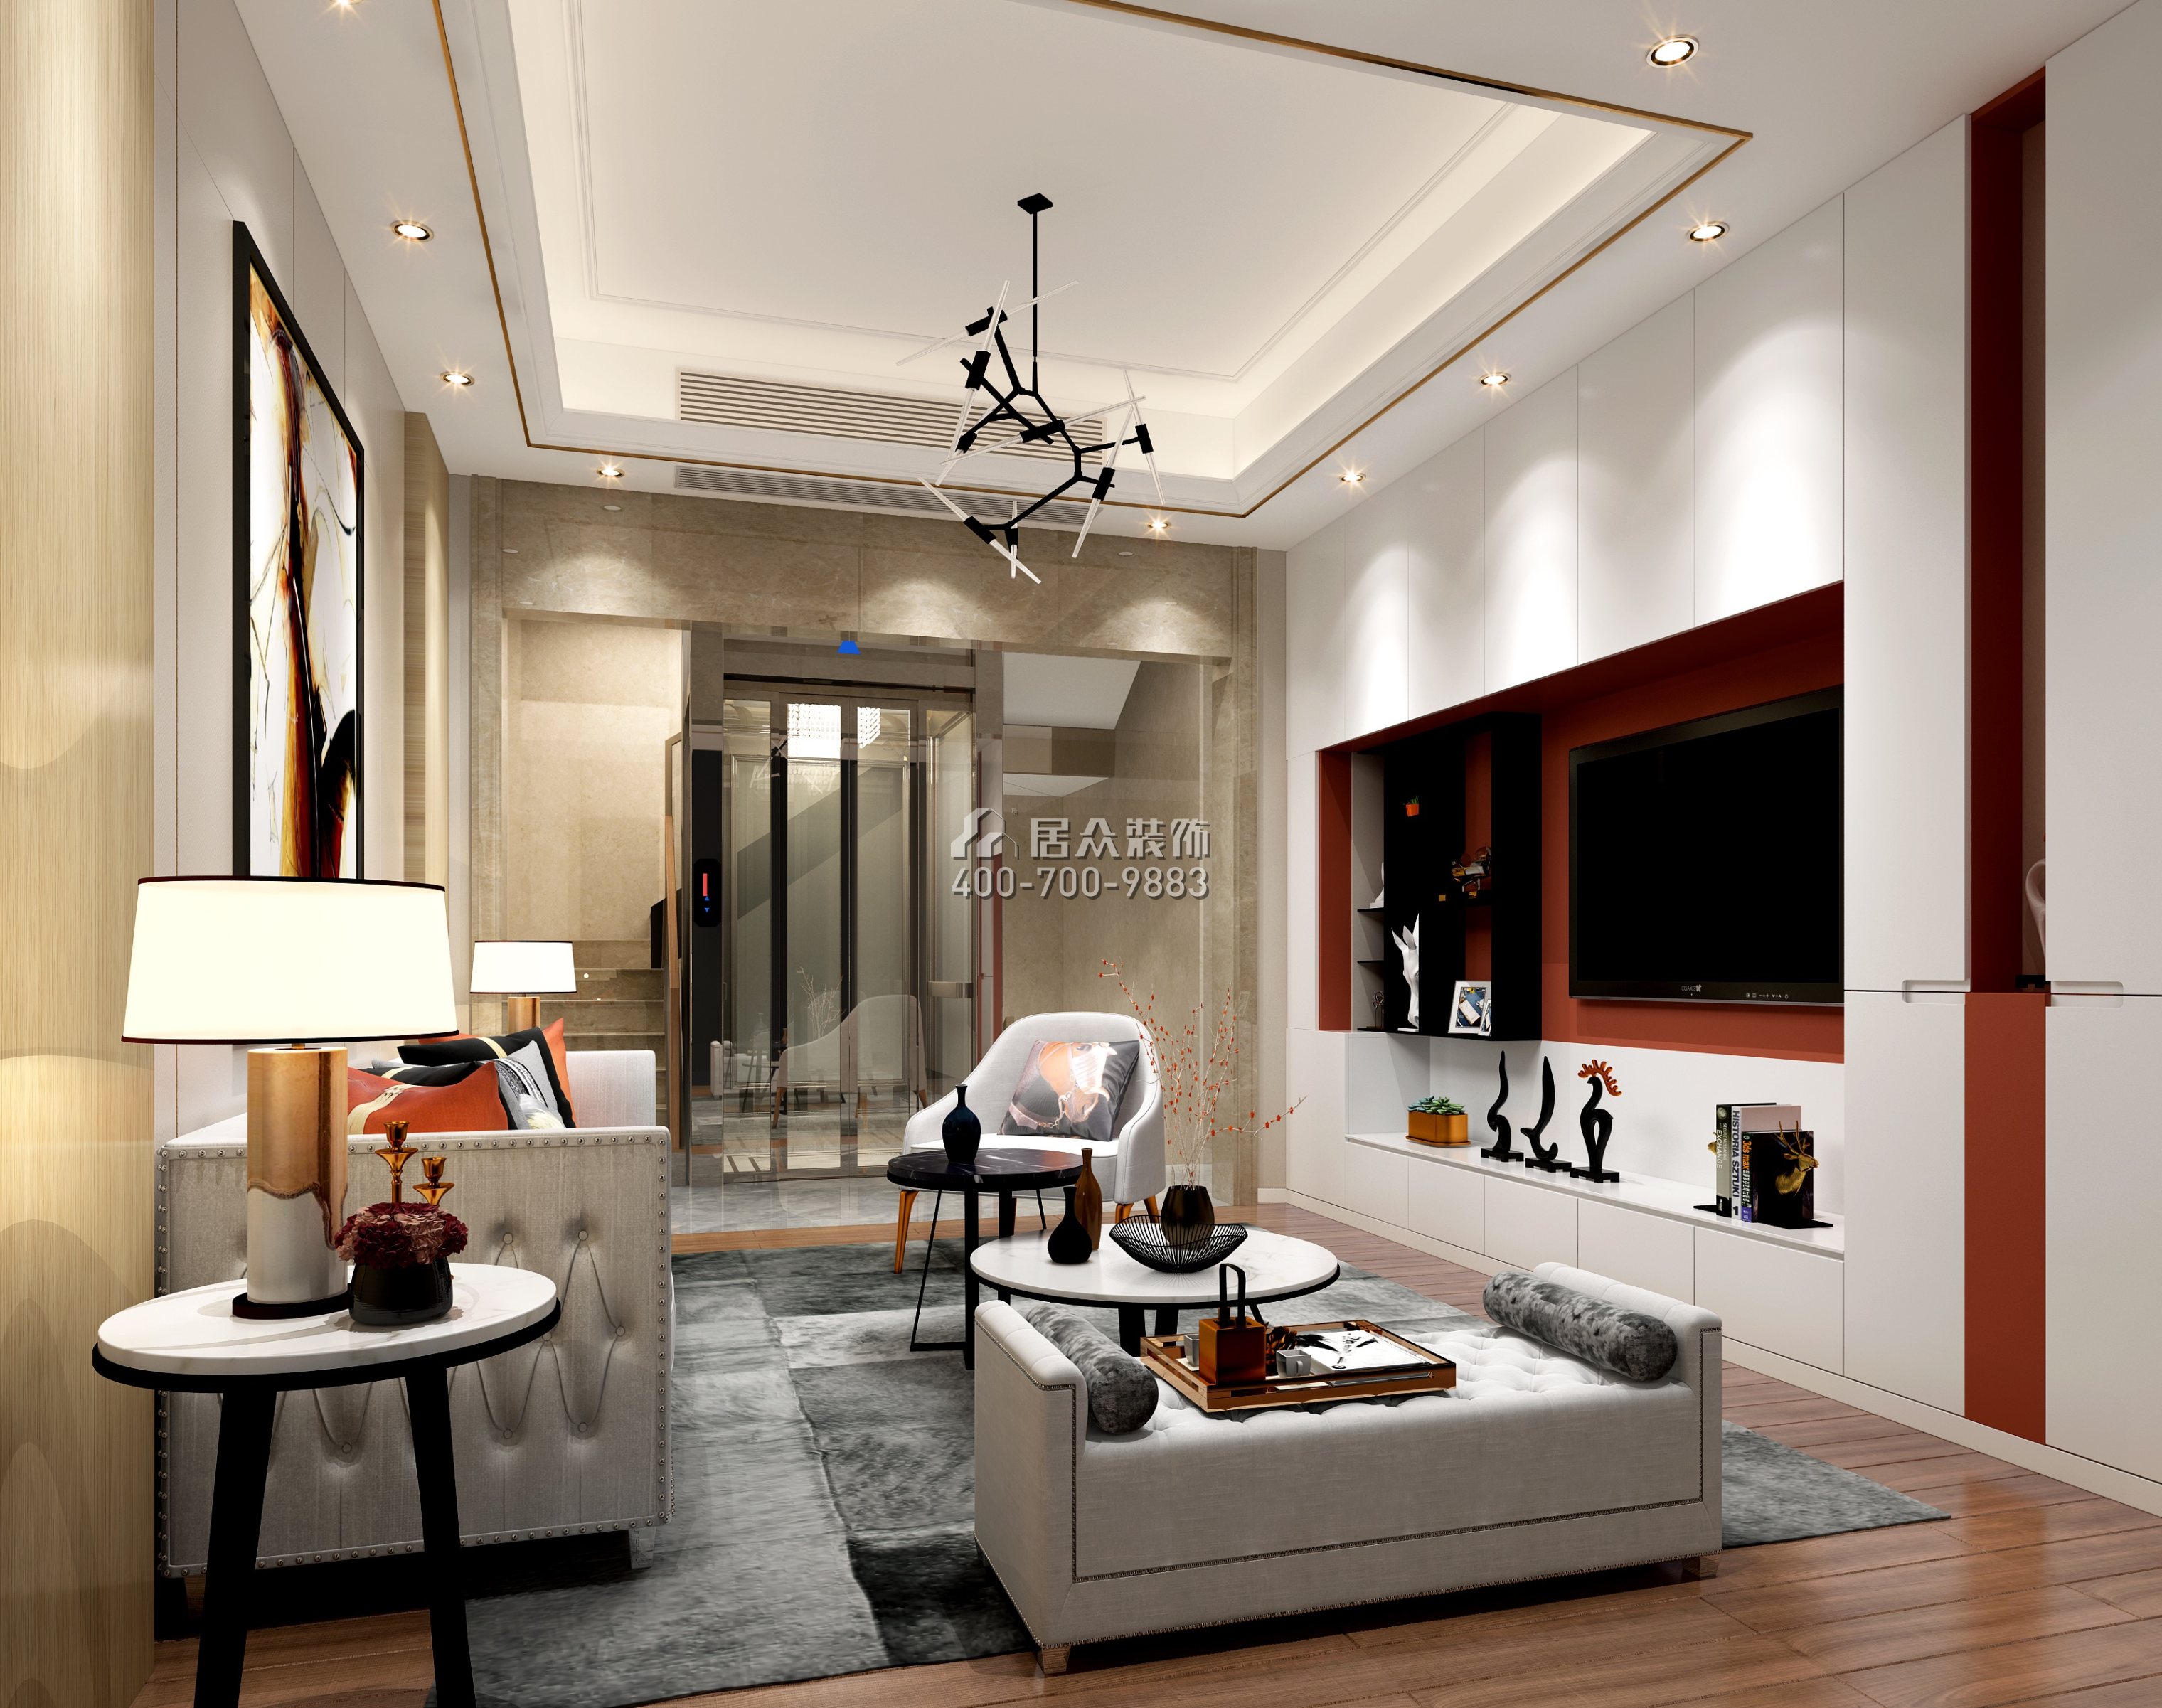 鼎峰尚境600平方米现代简约风格别墅户型客厅装修效果图